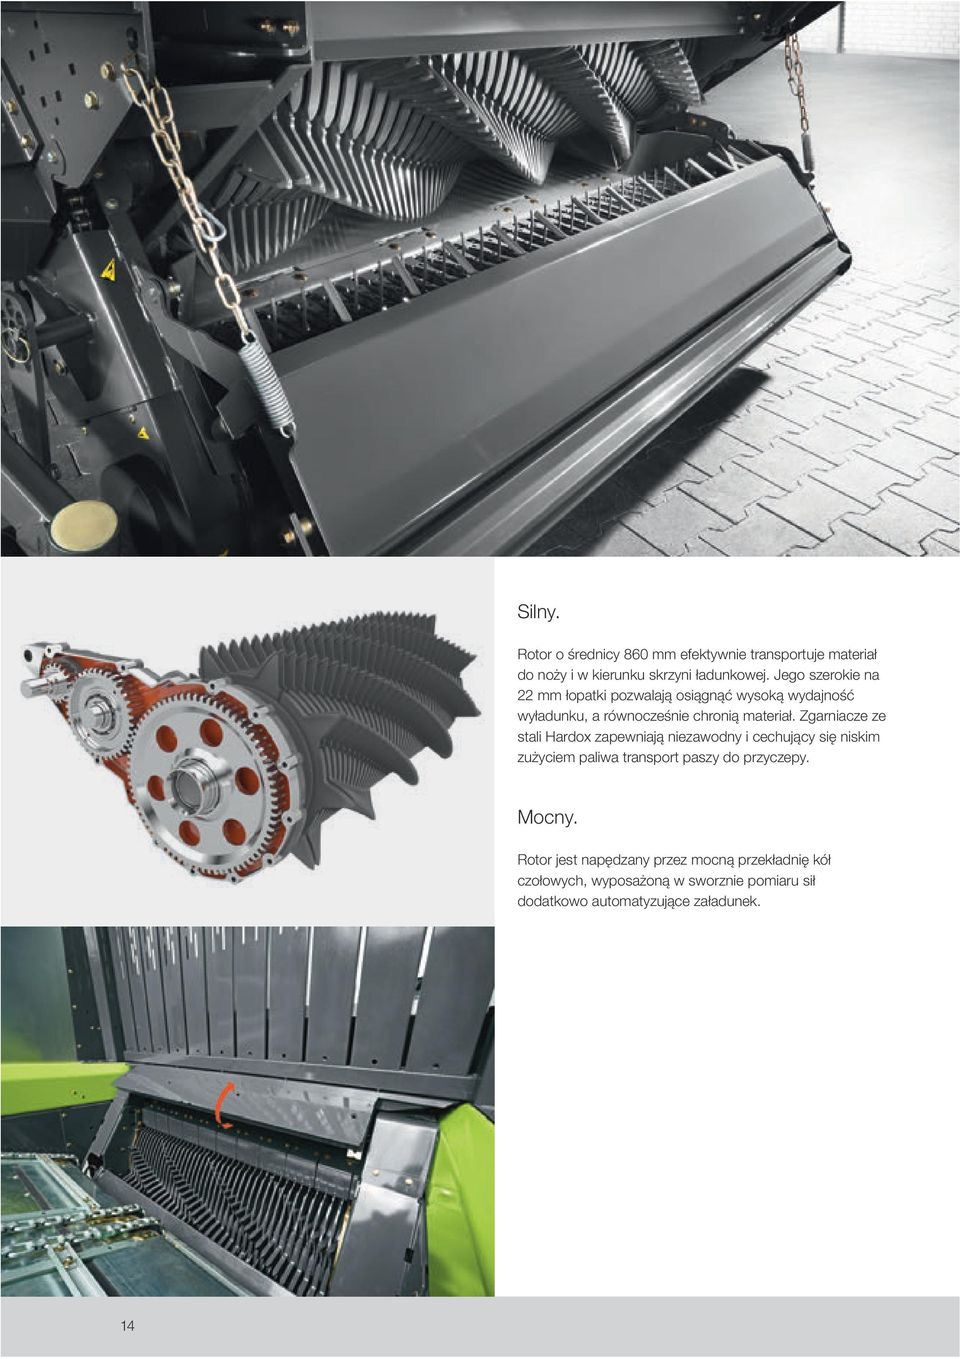 Zgarniacze ze stali Hardox zapewniają niezawodny i cechujący się niskim zużyciem paliwa transport paszy do przyczepy.